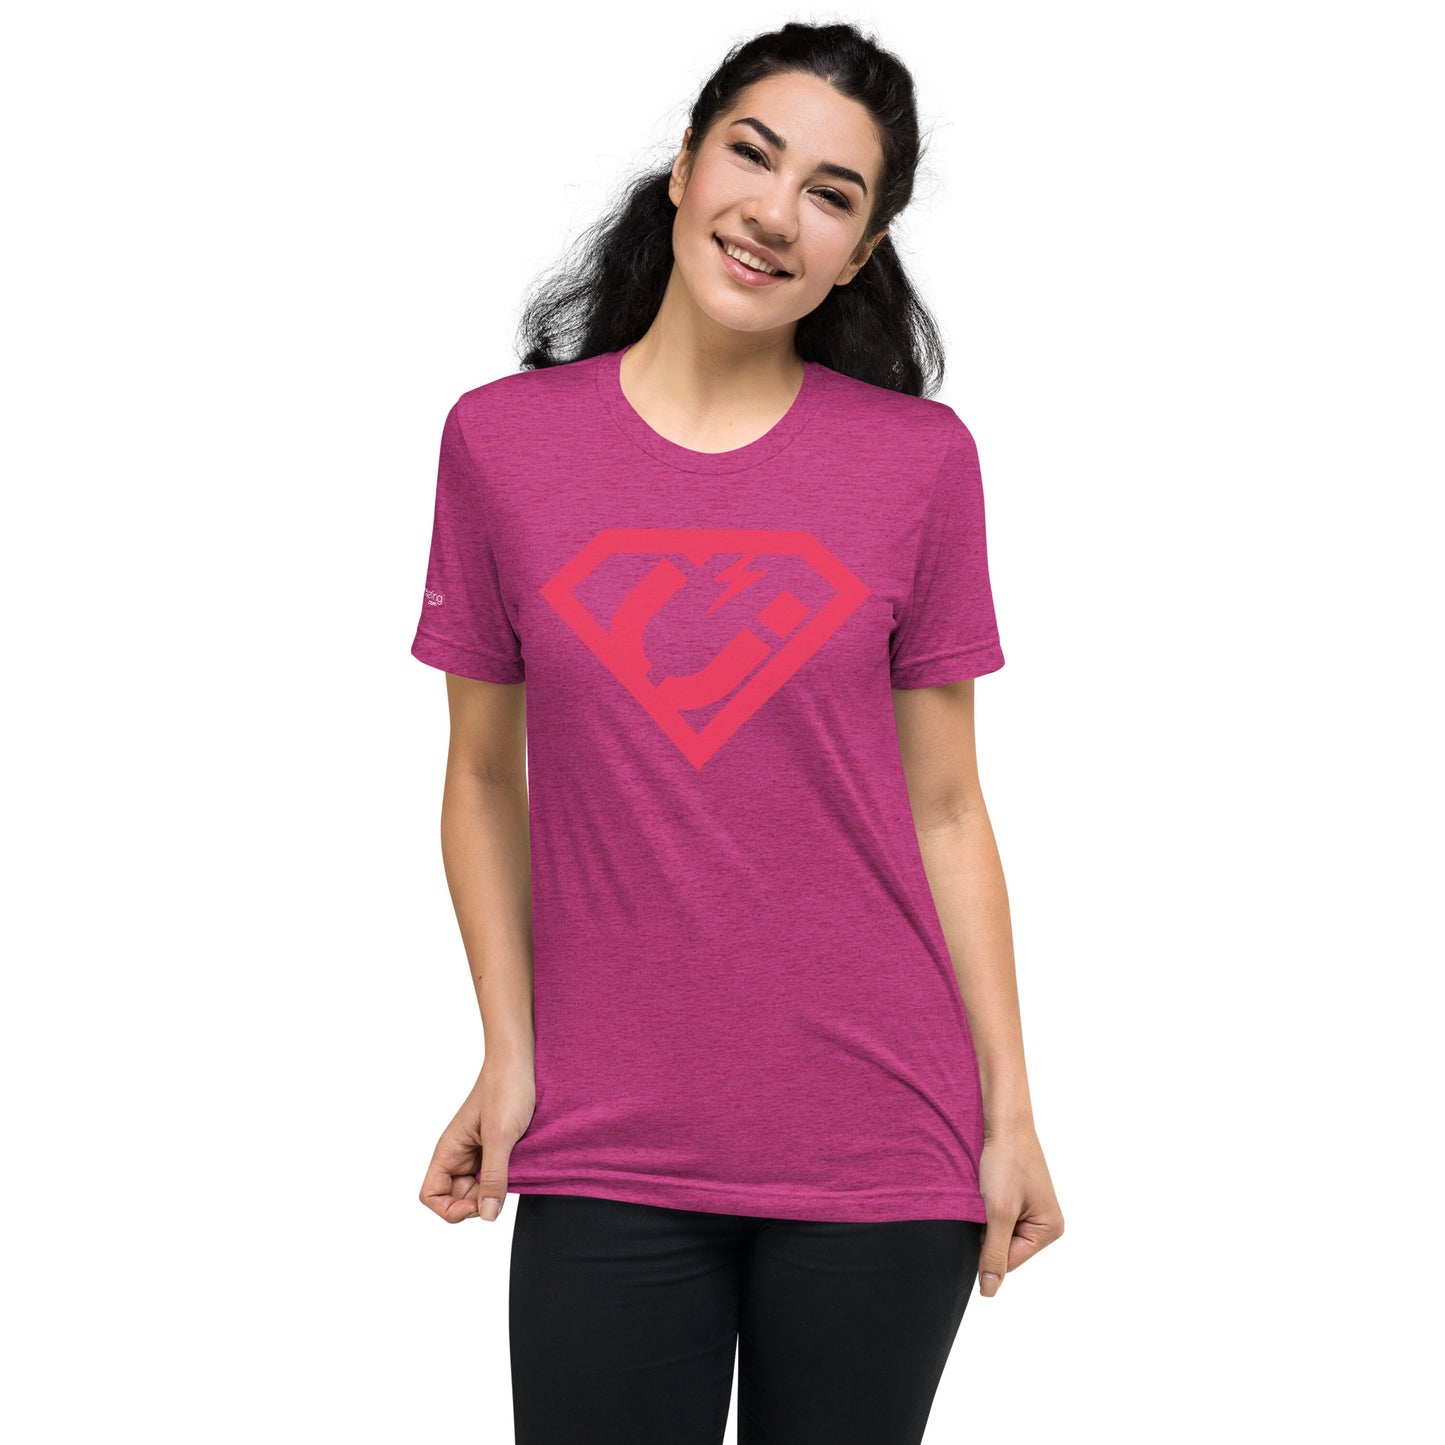 Super Attraction Marketer T-Shirt (unisex)